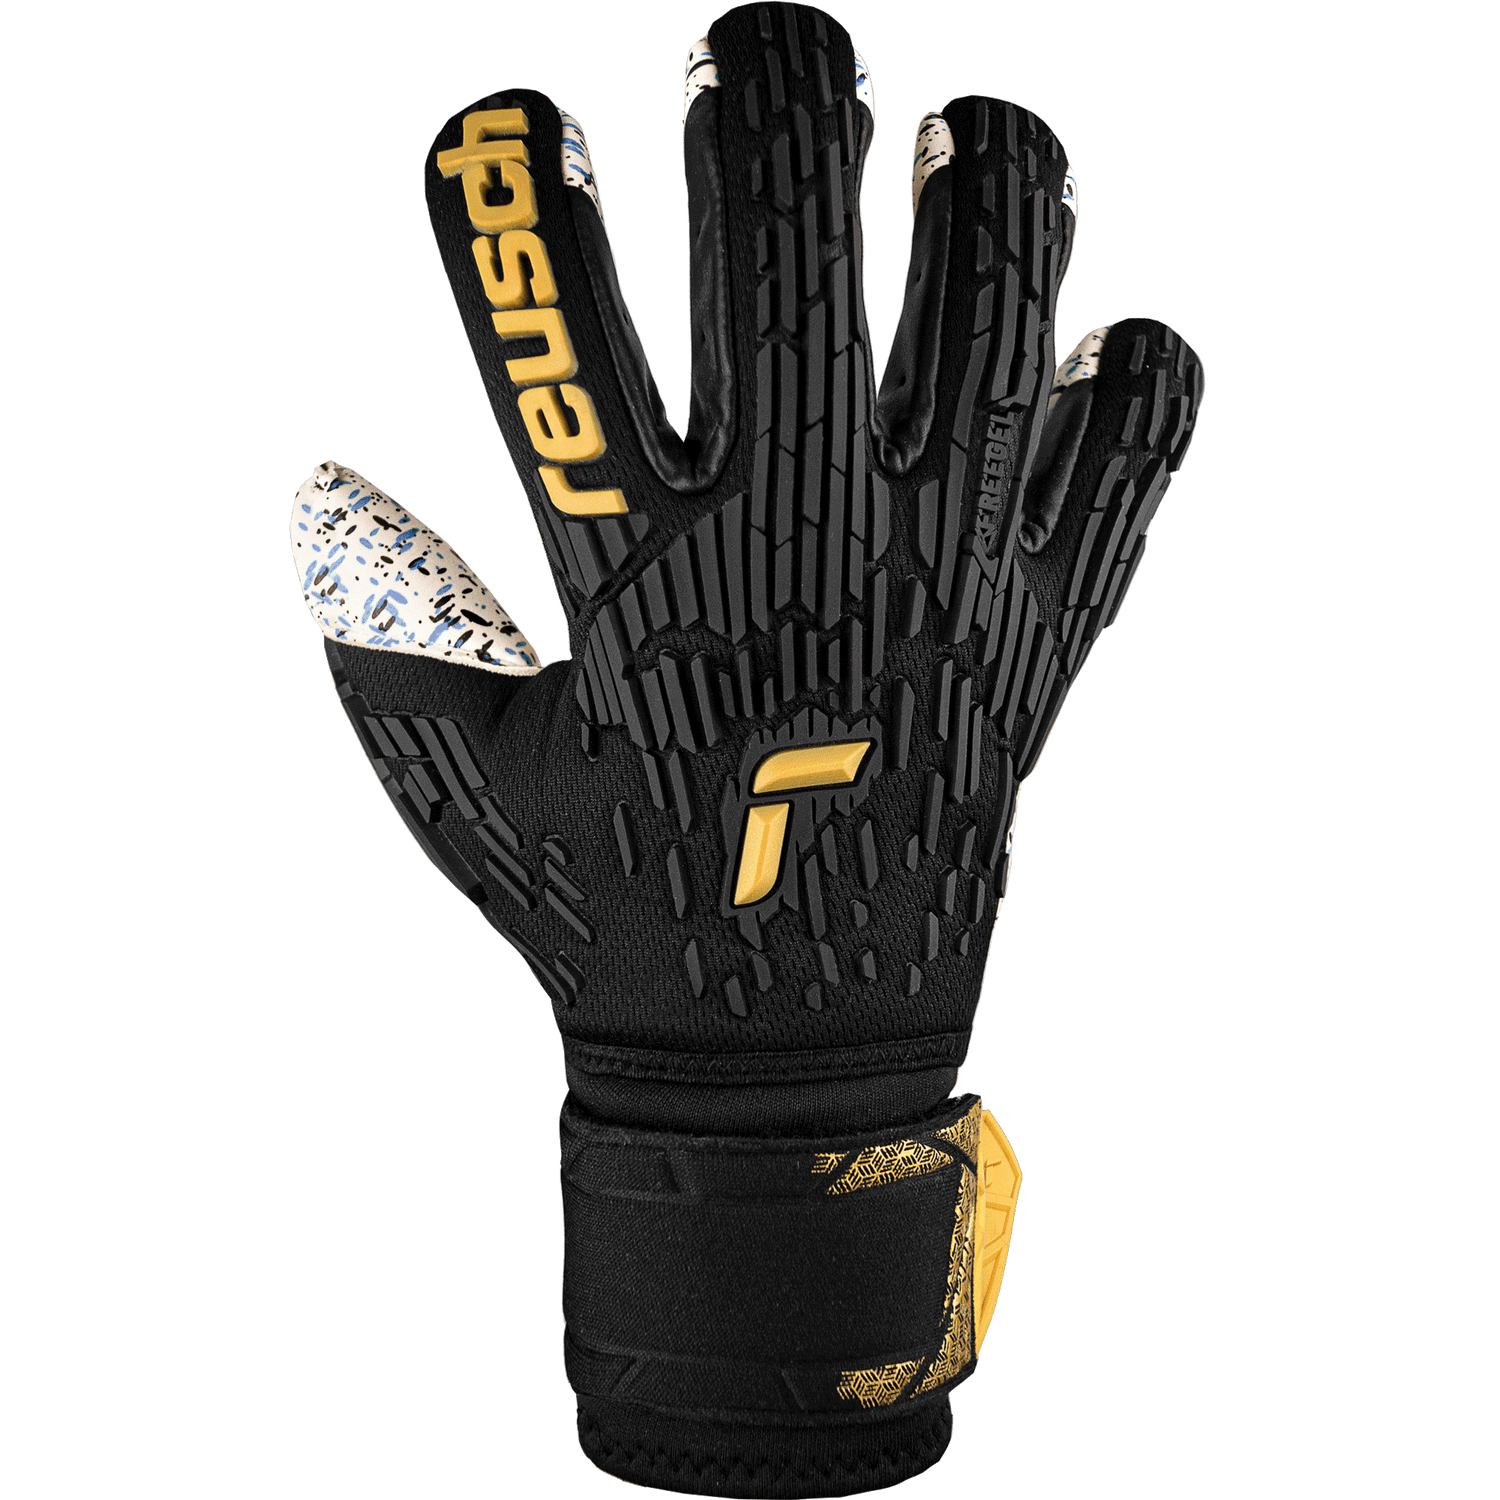 Reusch Attrakt Freegel Fusion Ortho-Tec Goalkeeper Glove (Single - Outer)